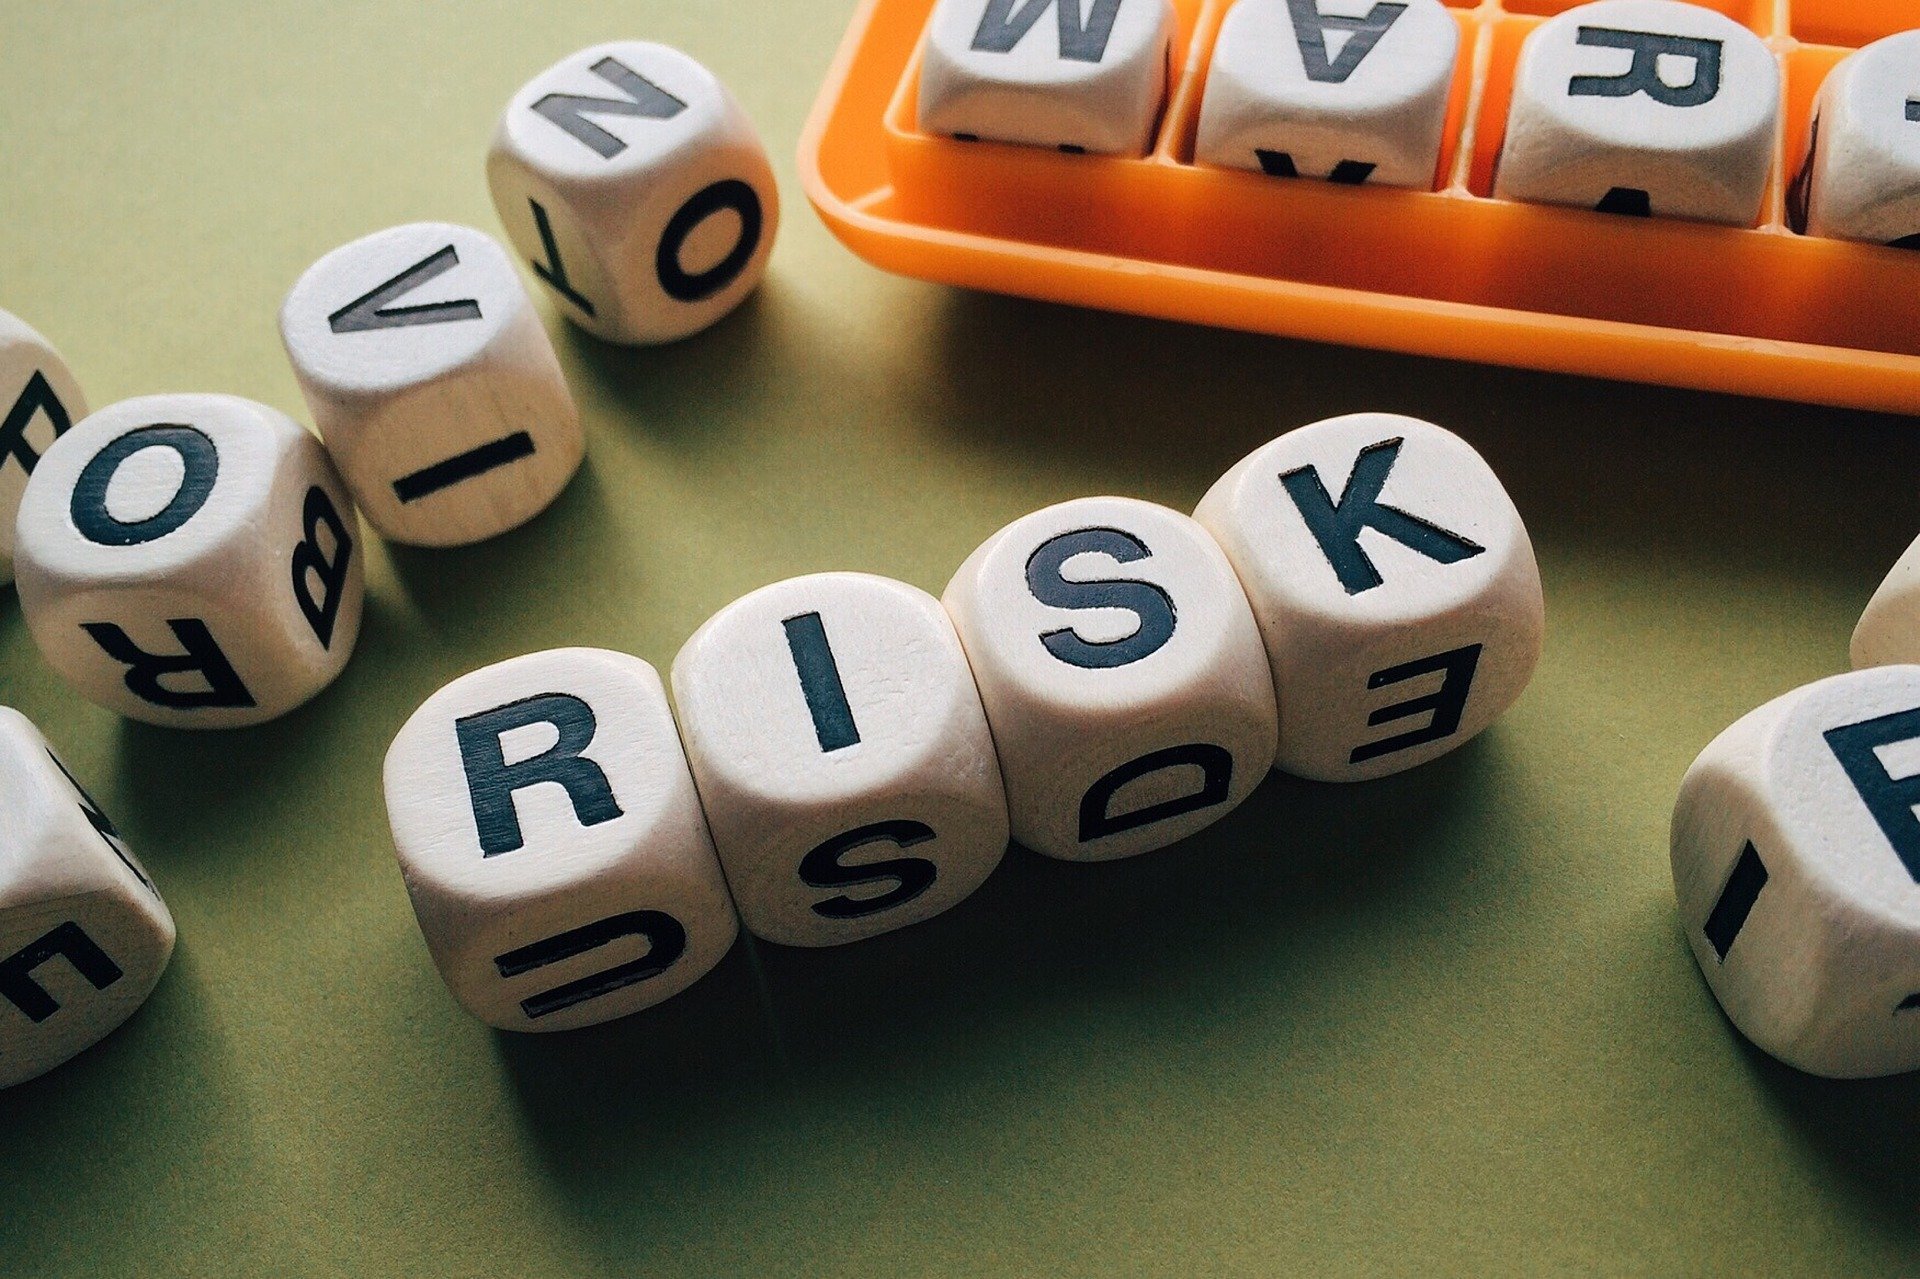 תפיסת בטיחות חדשה: סקר סיכונים משדרג את מקומות העבודה